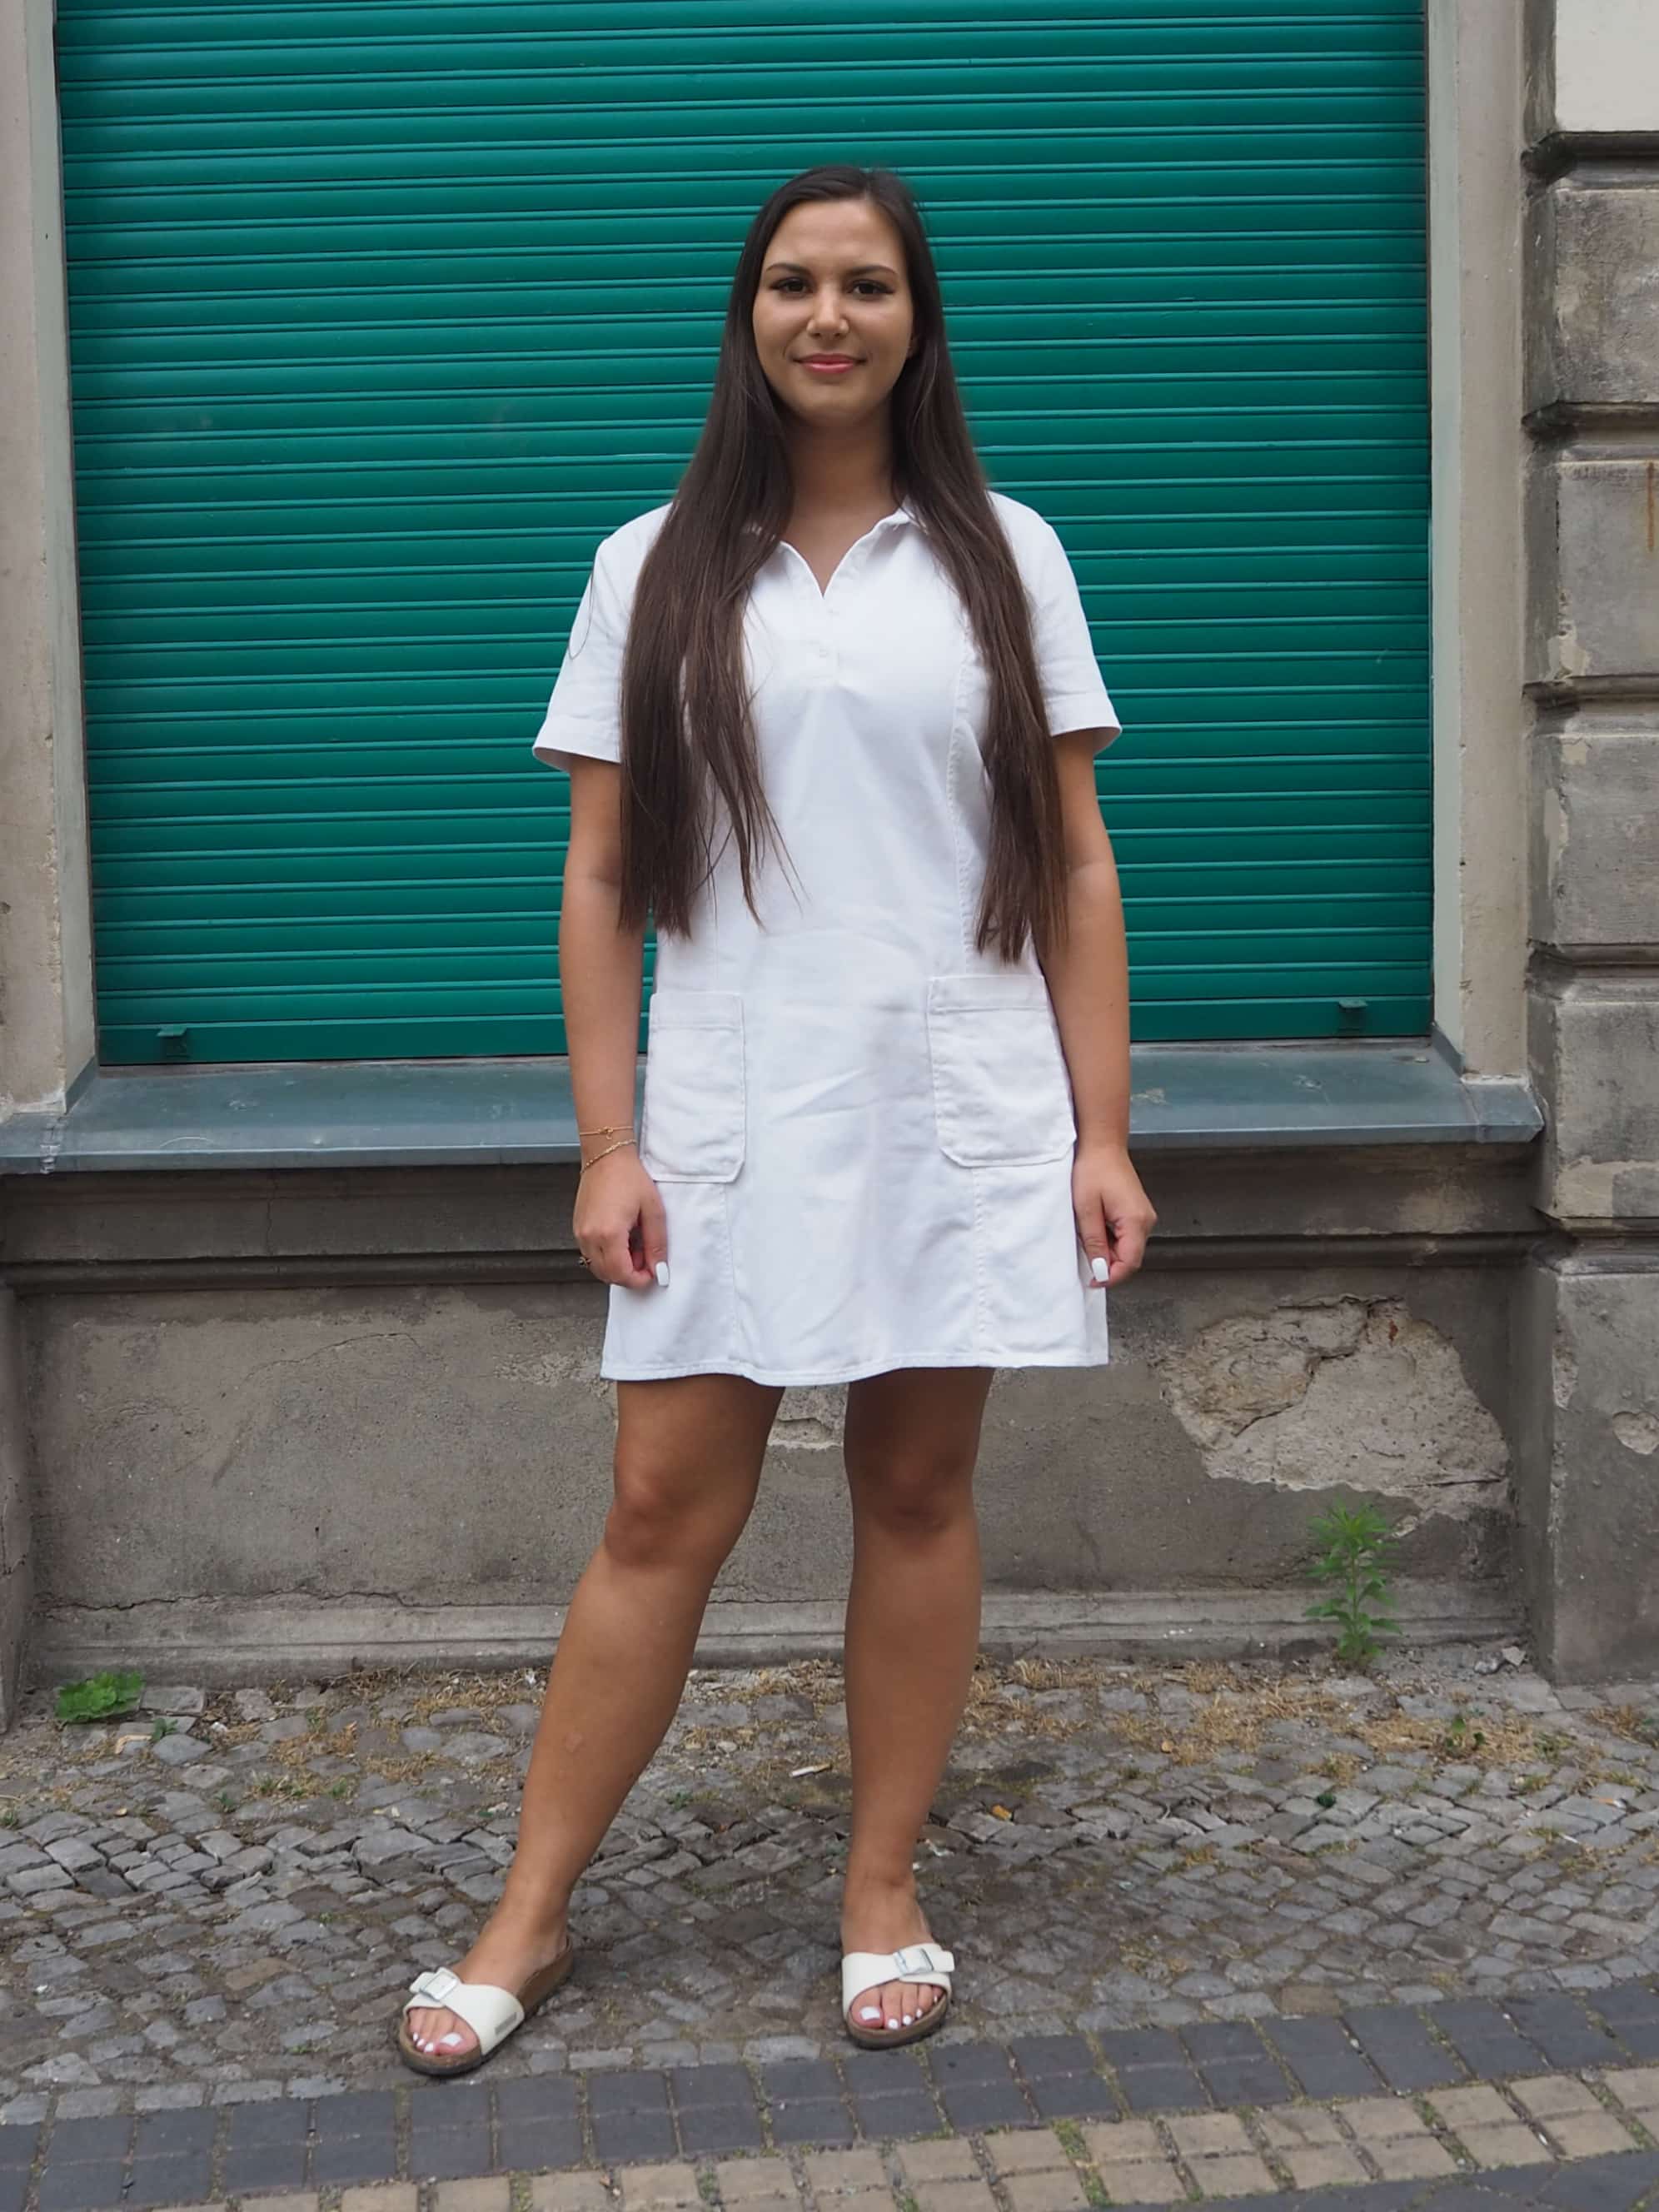 Eine Frau in einem weißen Kleid steht auf einer Ziegelmauer.